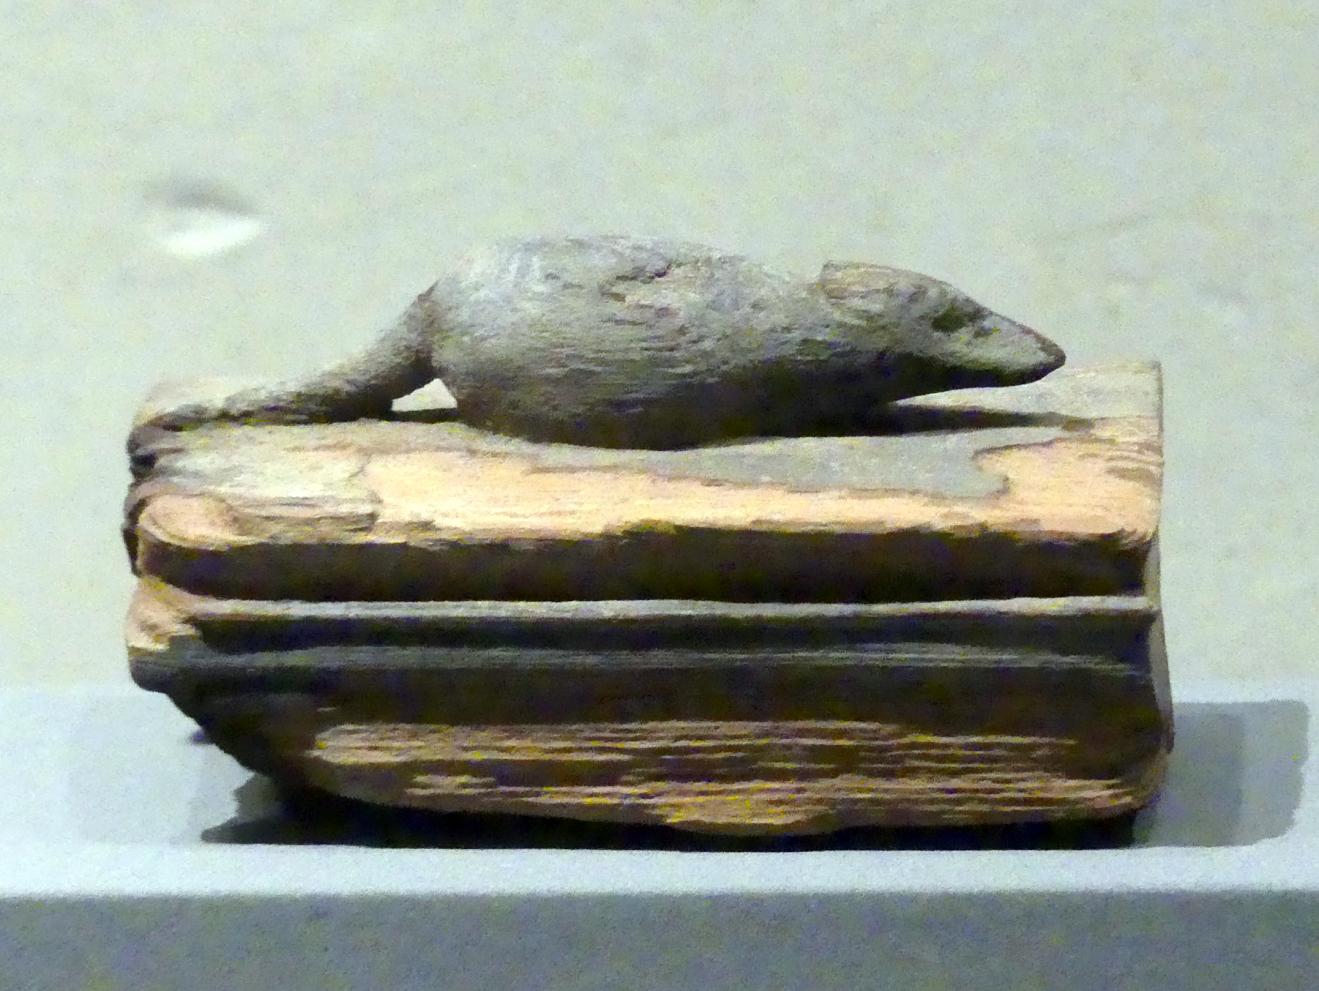 Zwei Särge für Spitzmäuse, Spätzeit, 360 - 342 v. Chr., 600 - 300 v. Chr.